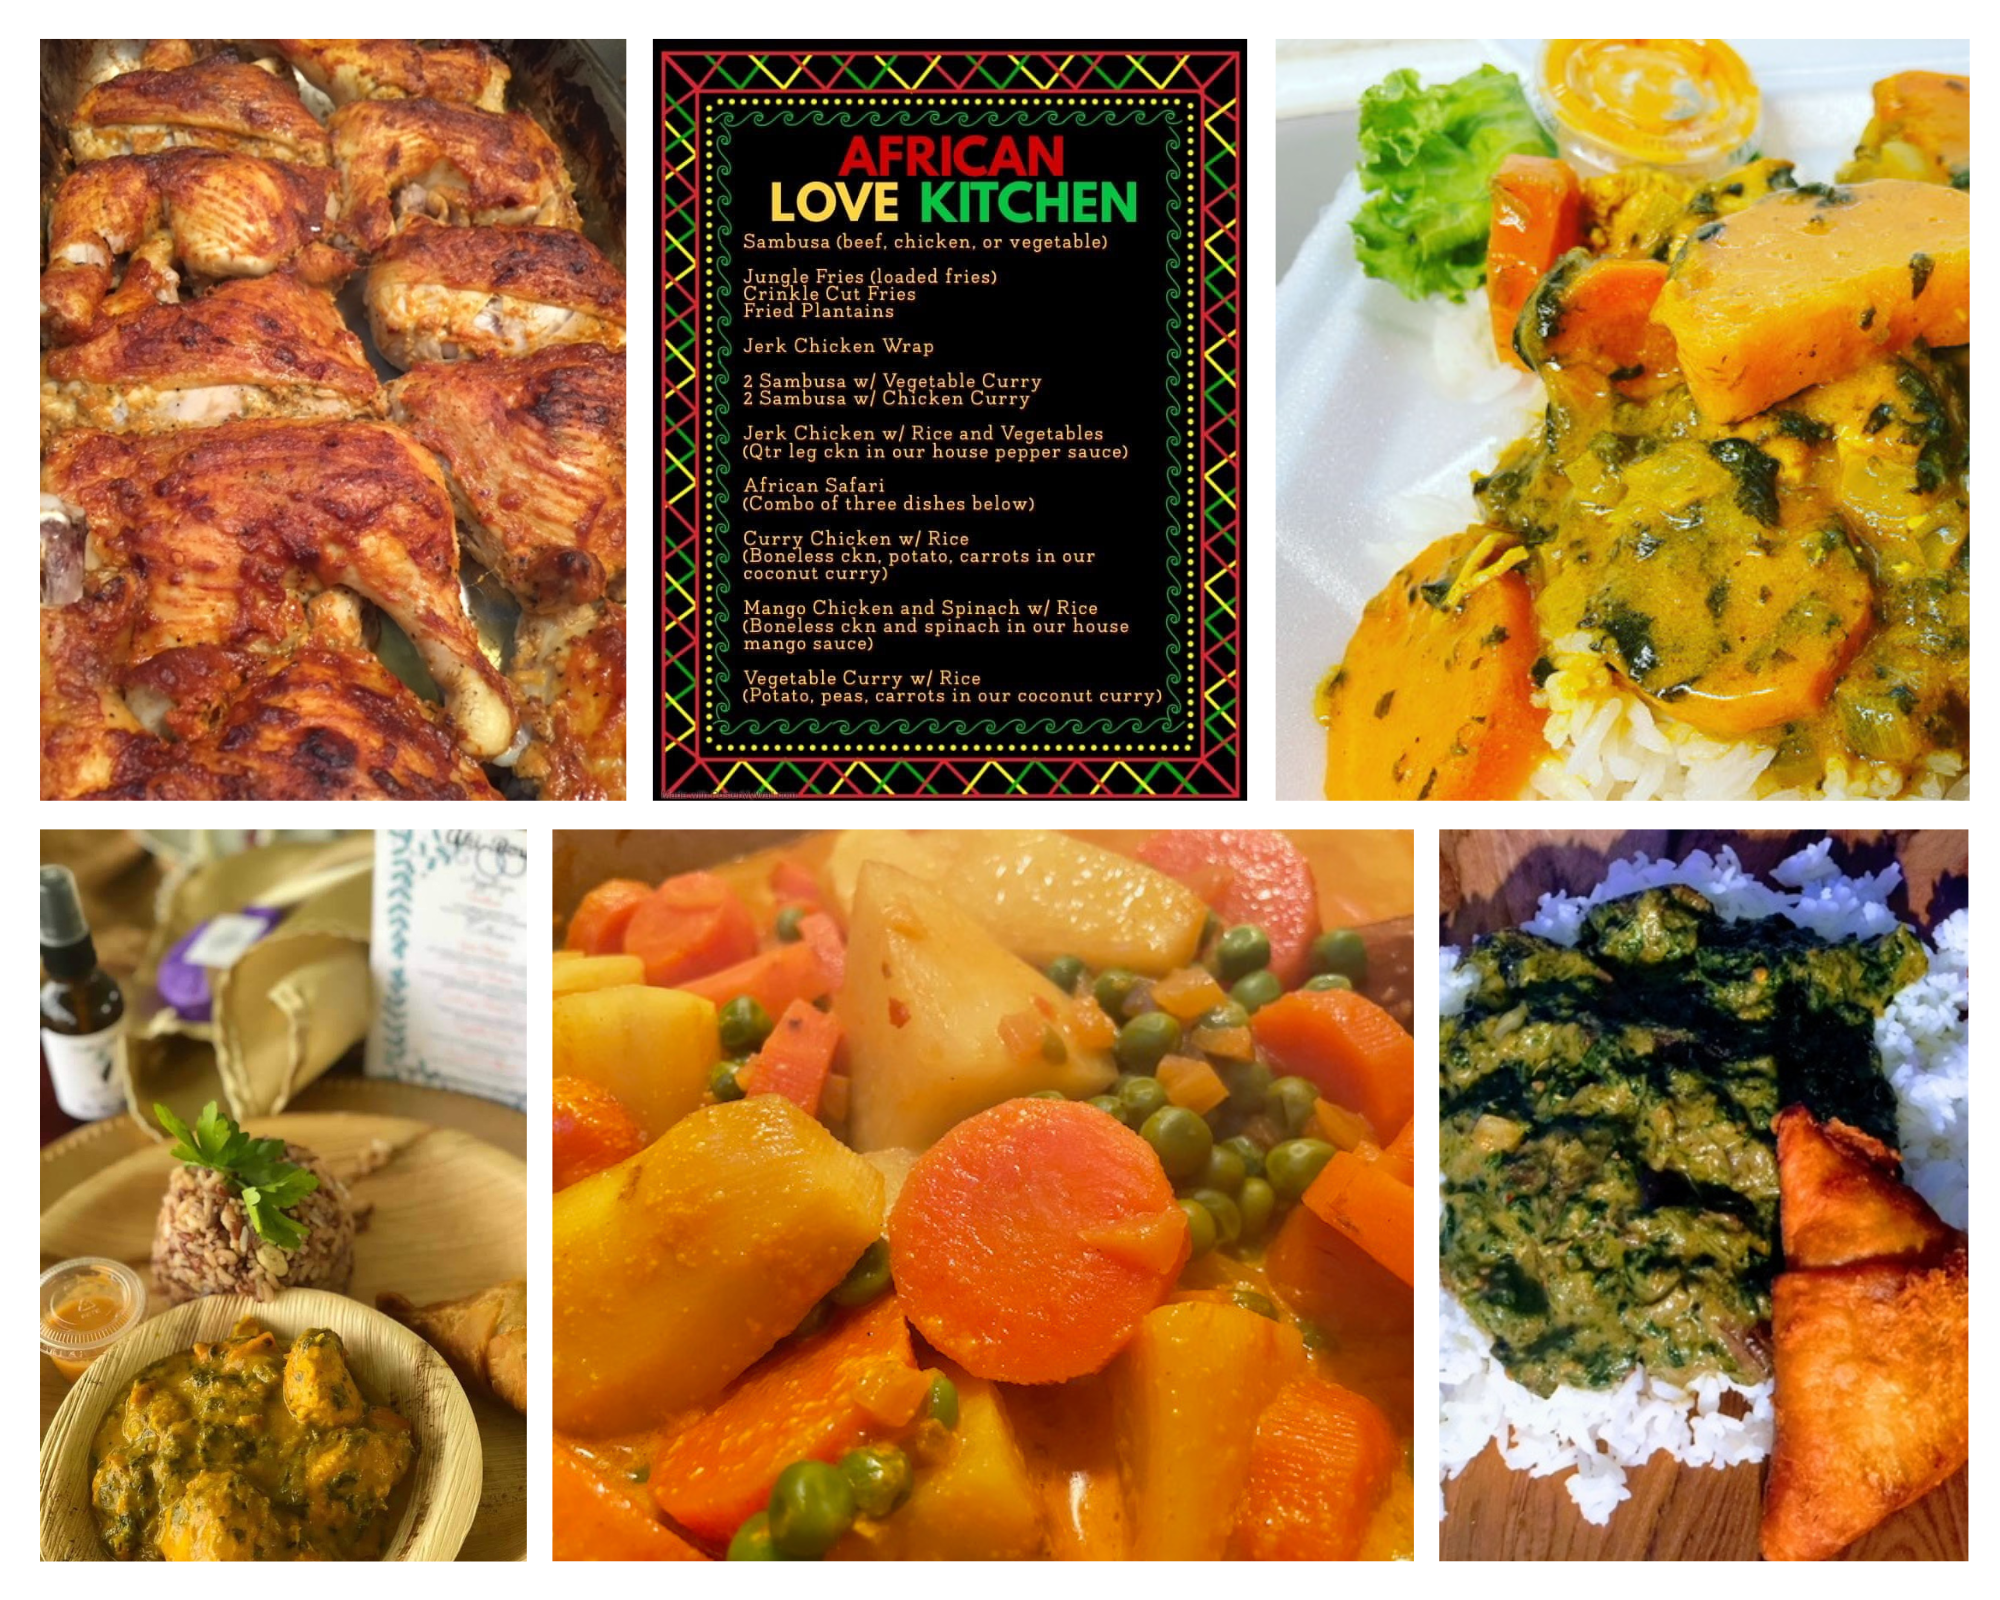 African Love Kitchen Menu Items